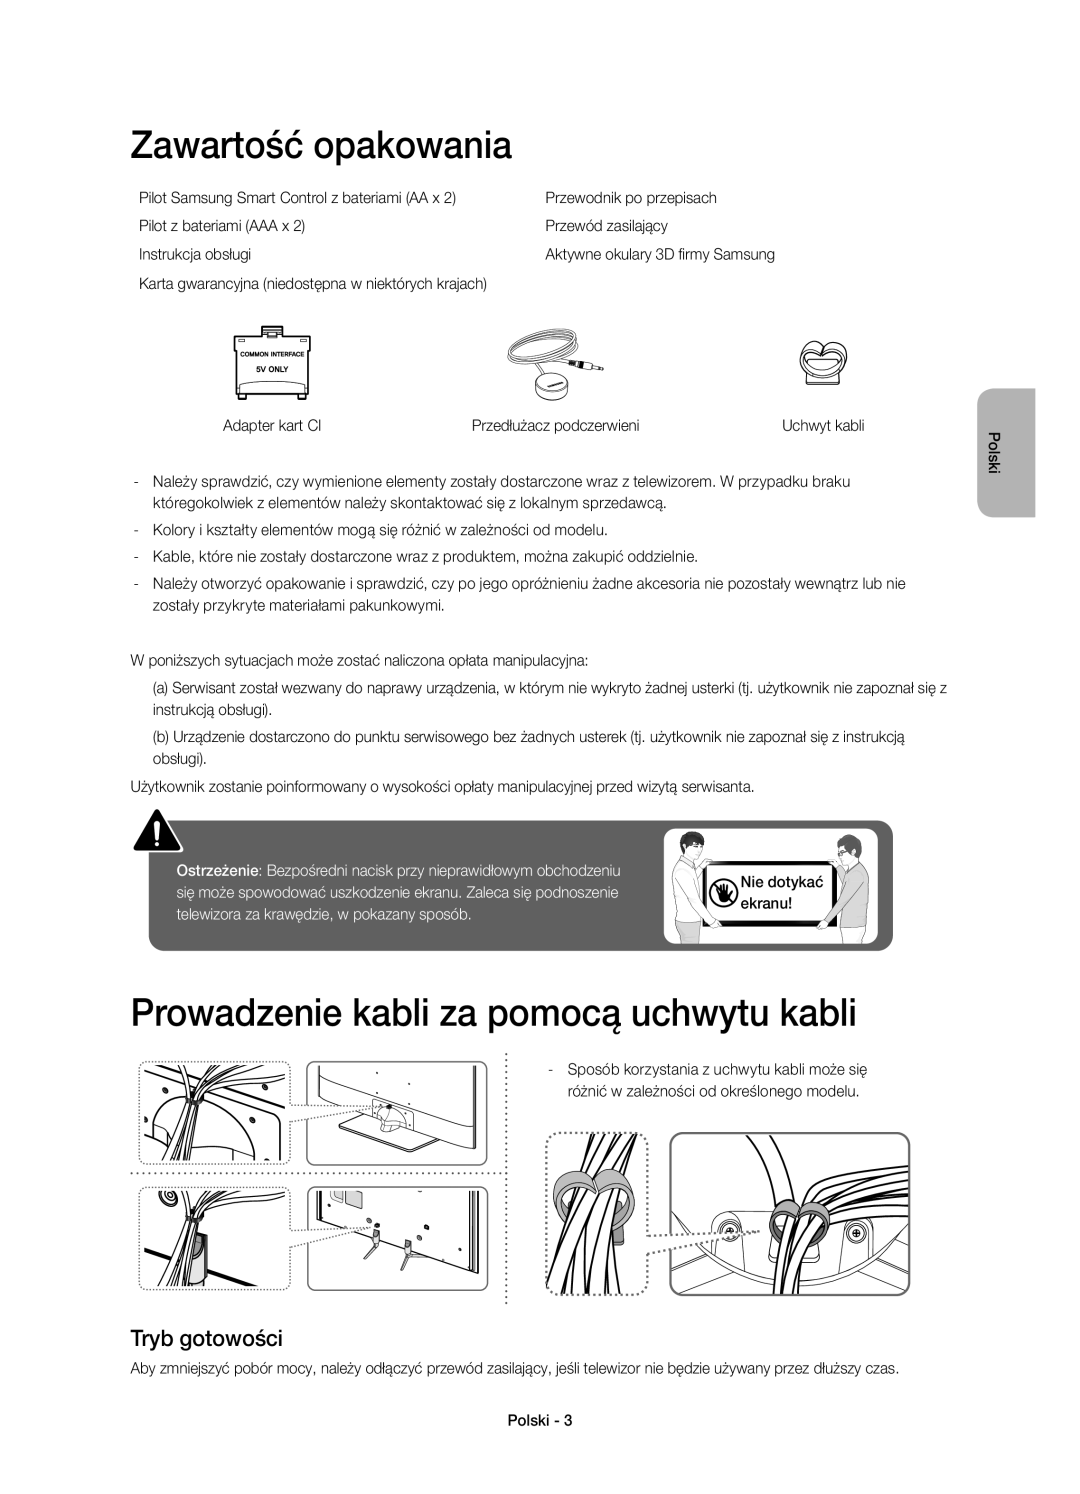 Samsung UE40H6500SLXXC manual Zawartość opakowania, Prowadzenie kabli za pomocą uchwytu kabli, Tryb gotowości, Nie dotykać 